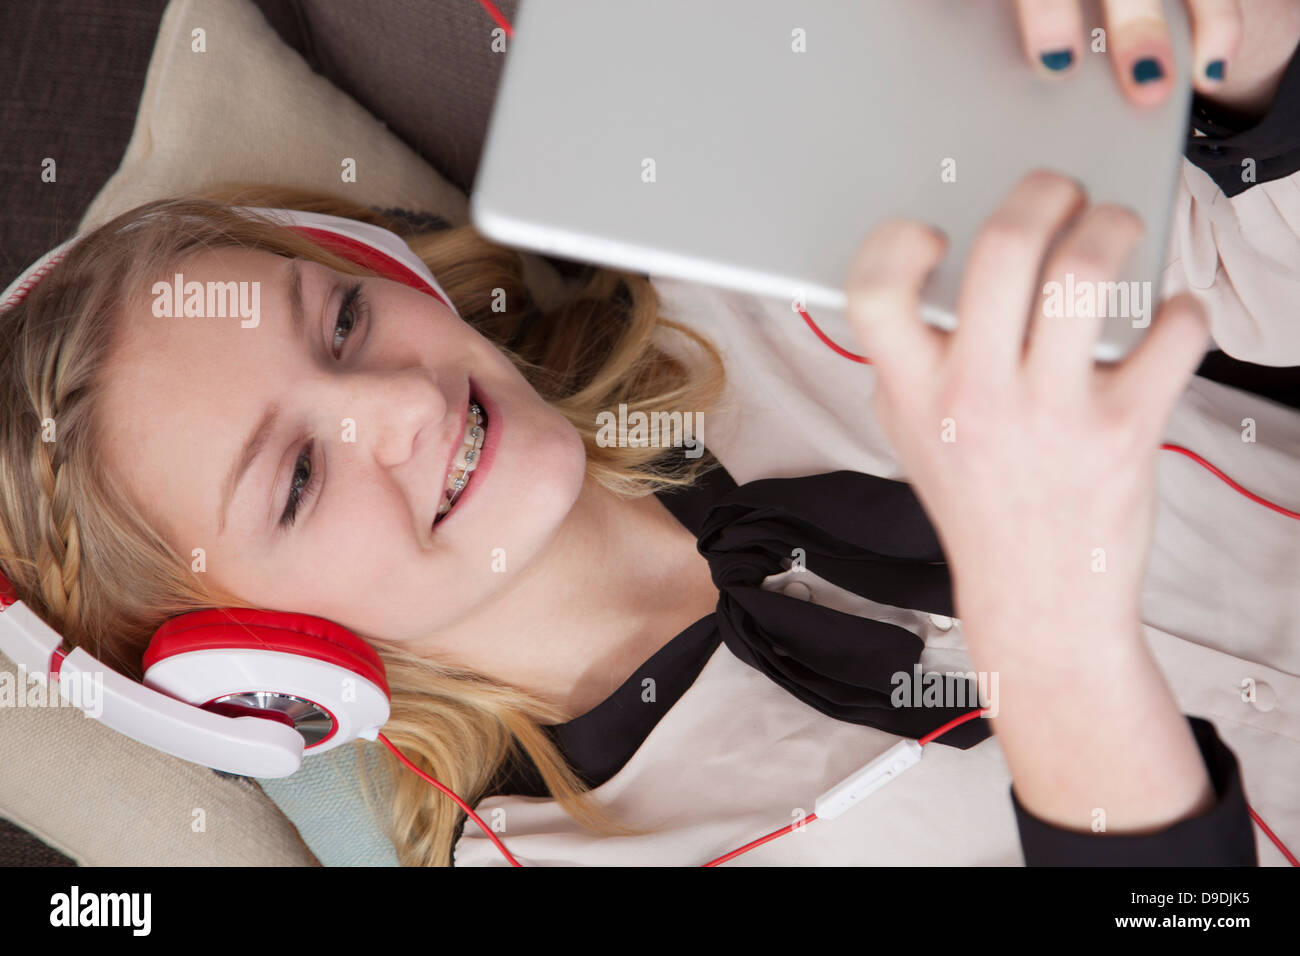 Girls lying on sofa using digital tablet Stock Photo